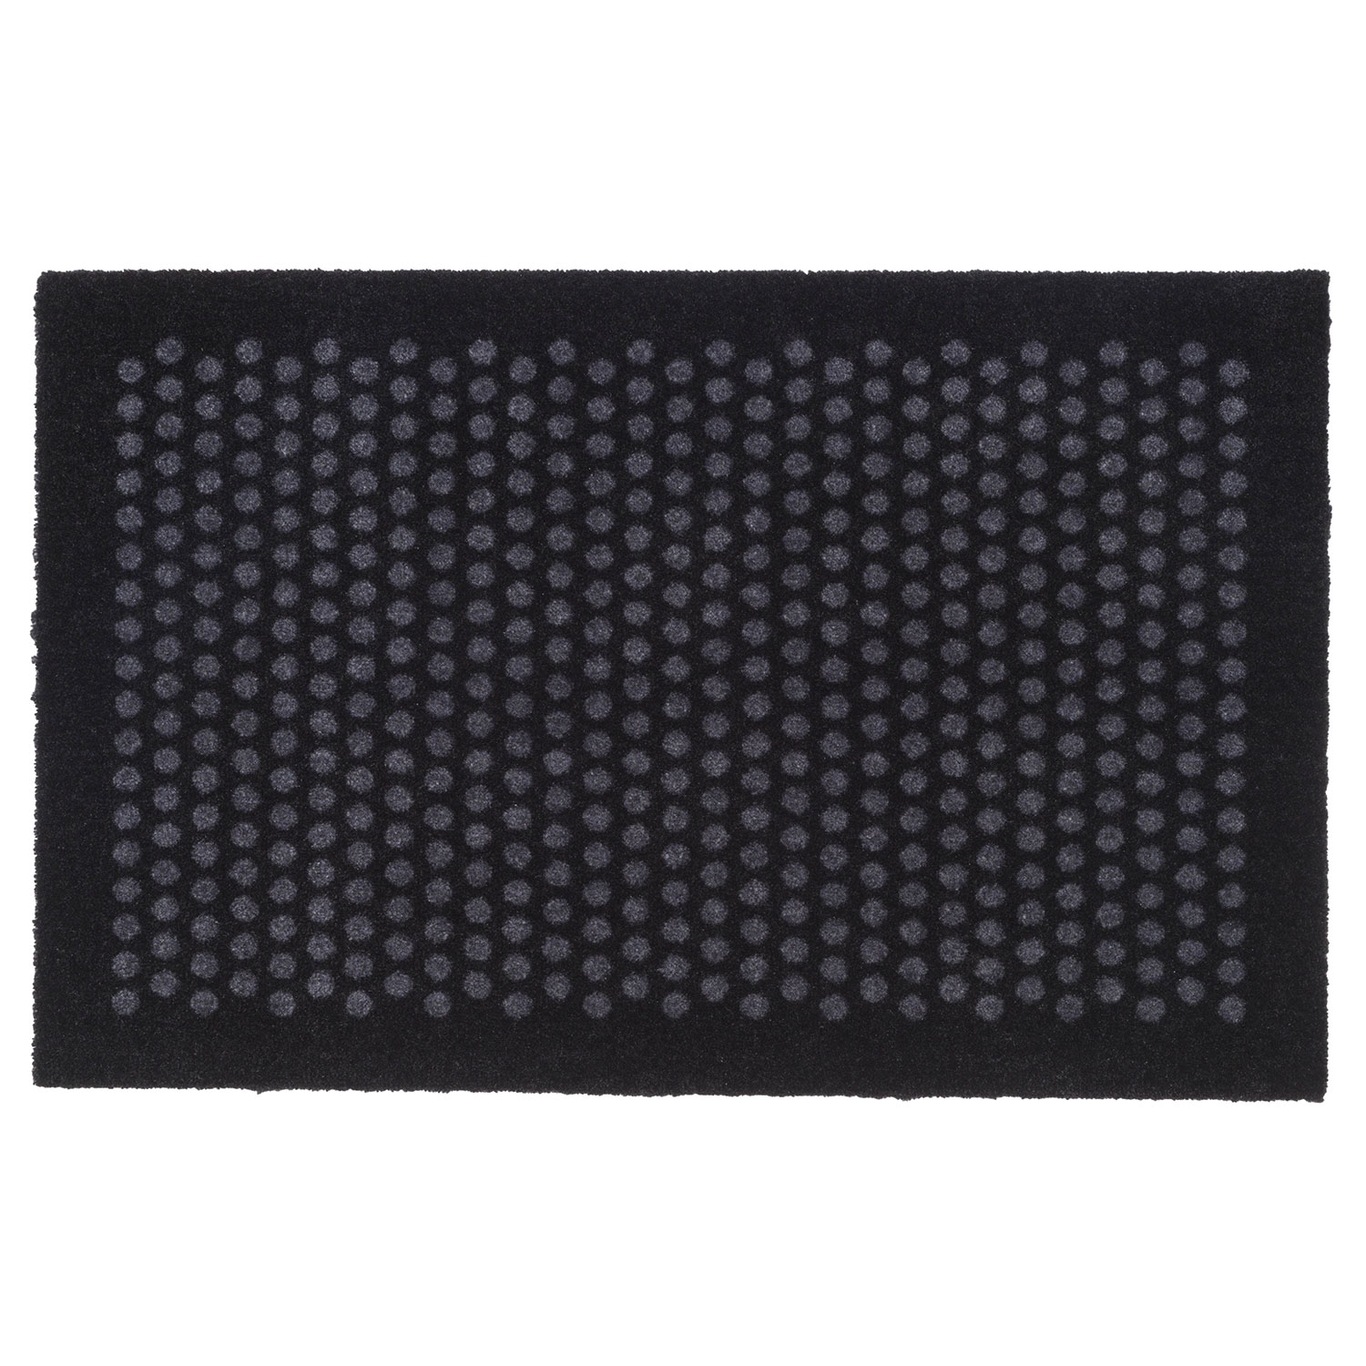 Dot Doormat 60x90cm, Black/Grey